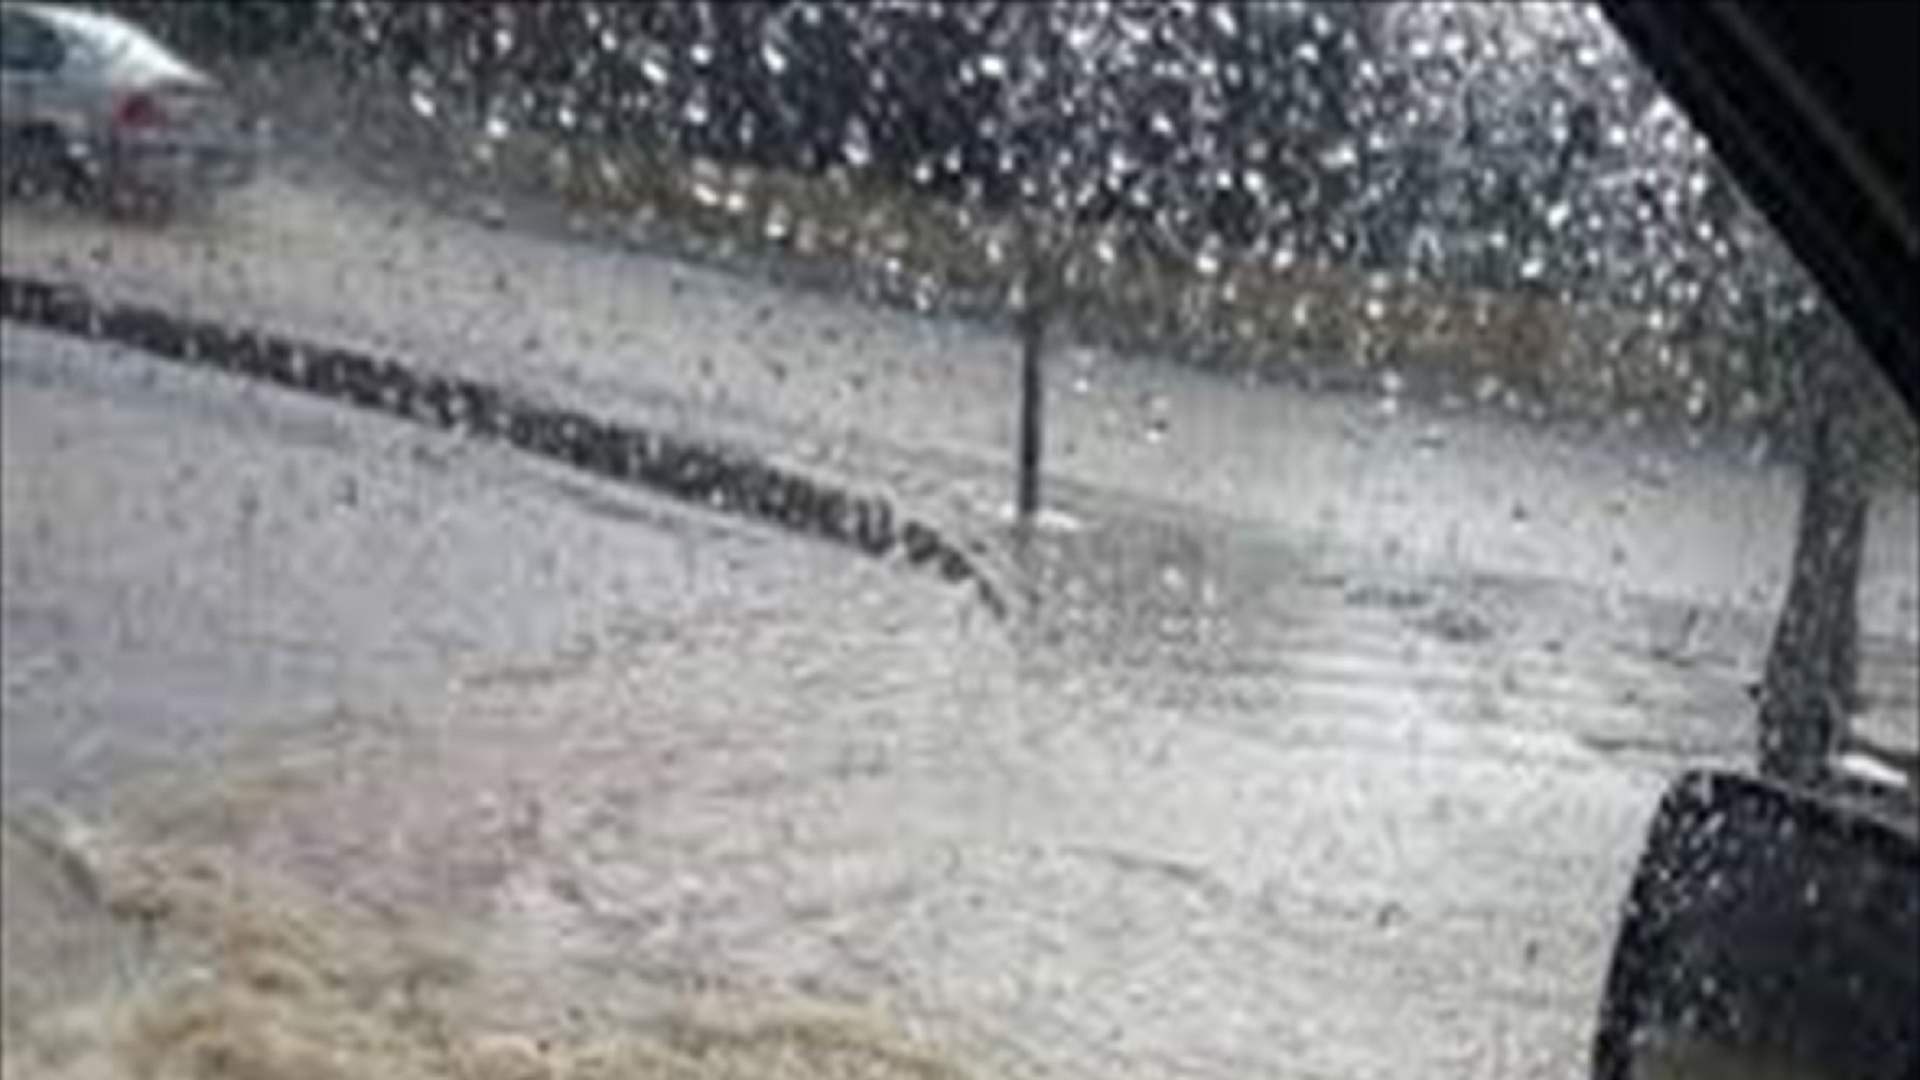 اثر الأمطار الغزيرة... تجمّع للمياه على عدد من الطرقات اللبنانية